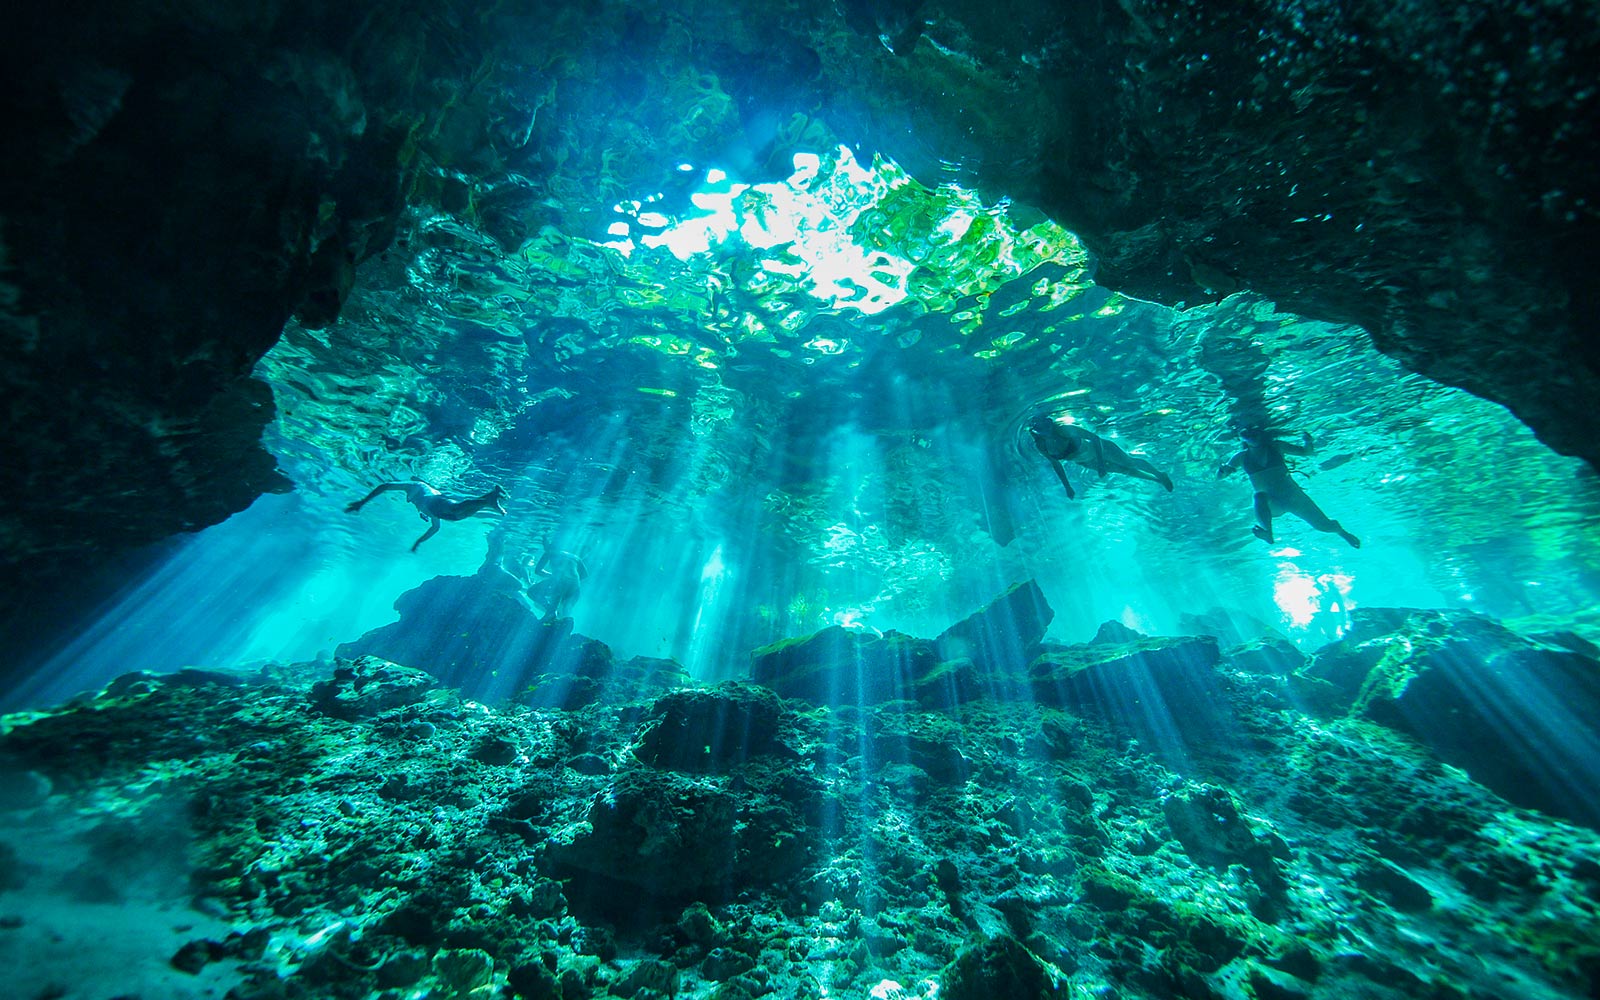 Podvodni prizor, ki osvetljuje žarke svetlobe, ki prehajajo skozi vodo (predvajajte video).